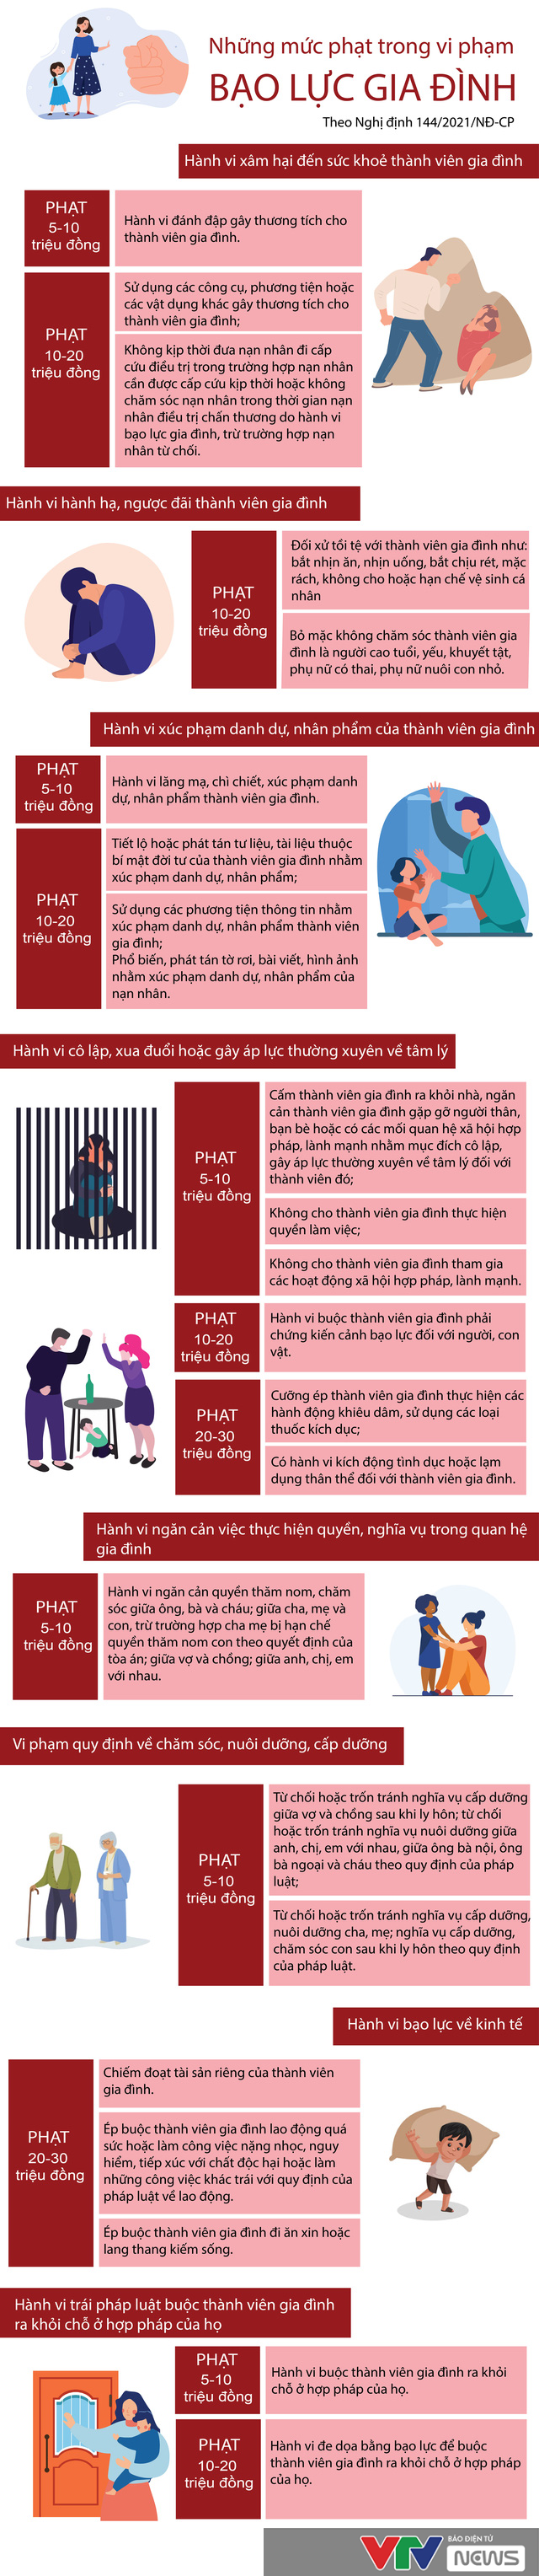 [Infographic] Những mức phạt trong vi phạm bạo lực gia đình - Ảnh 1.